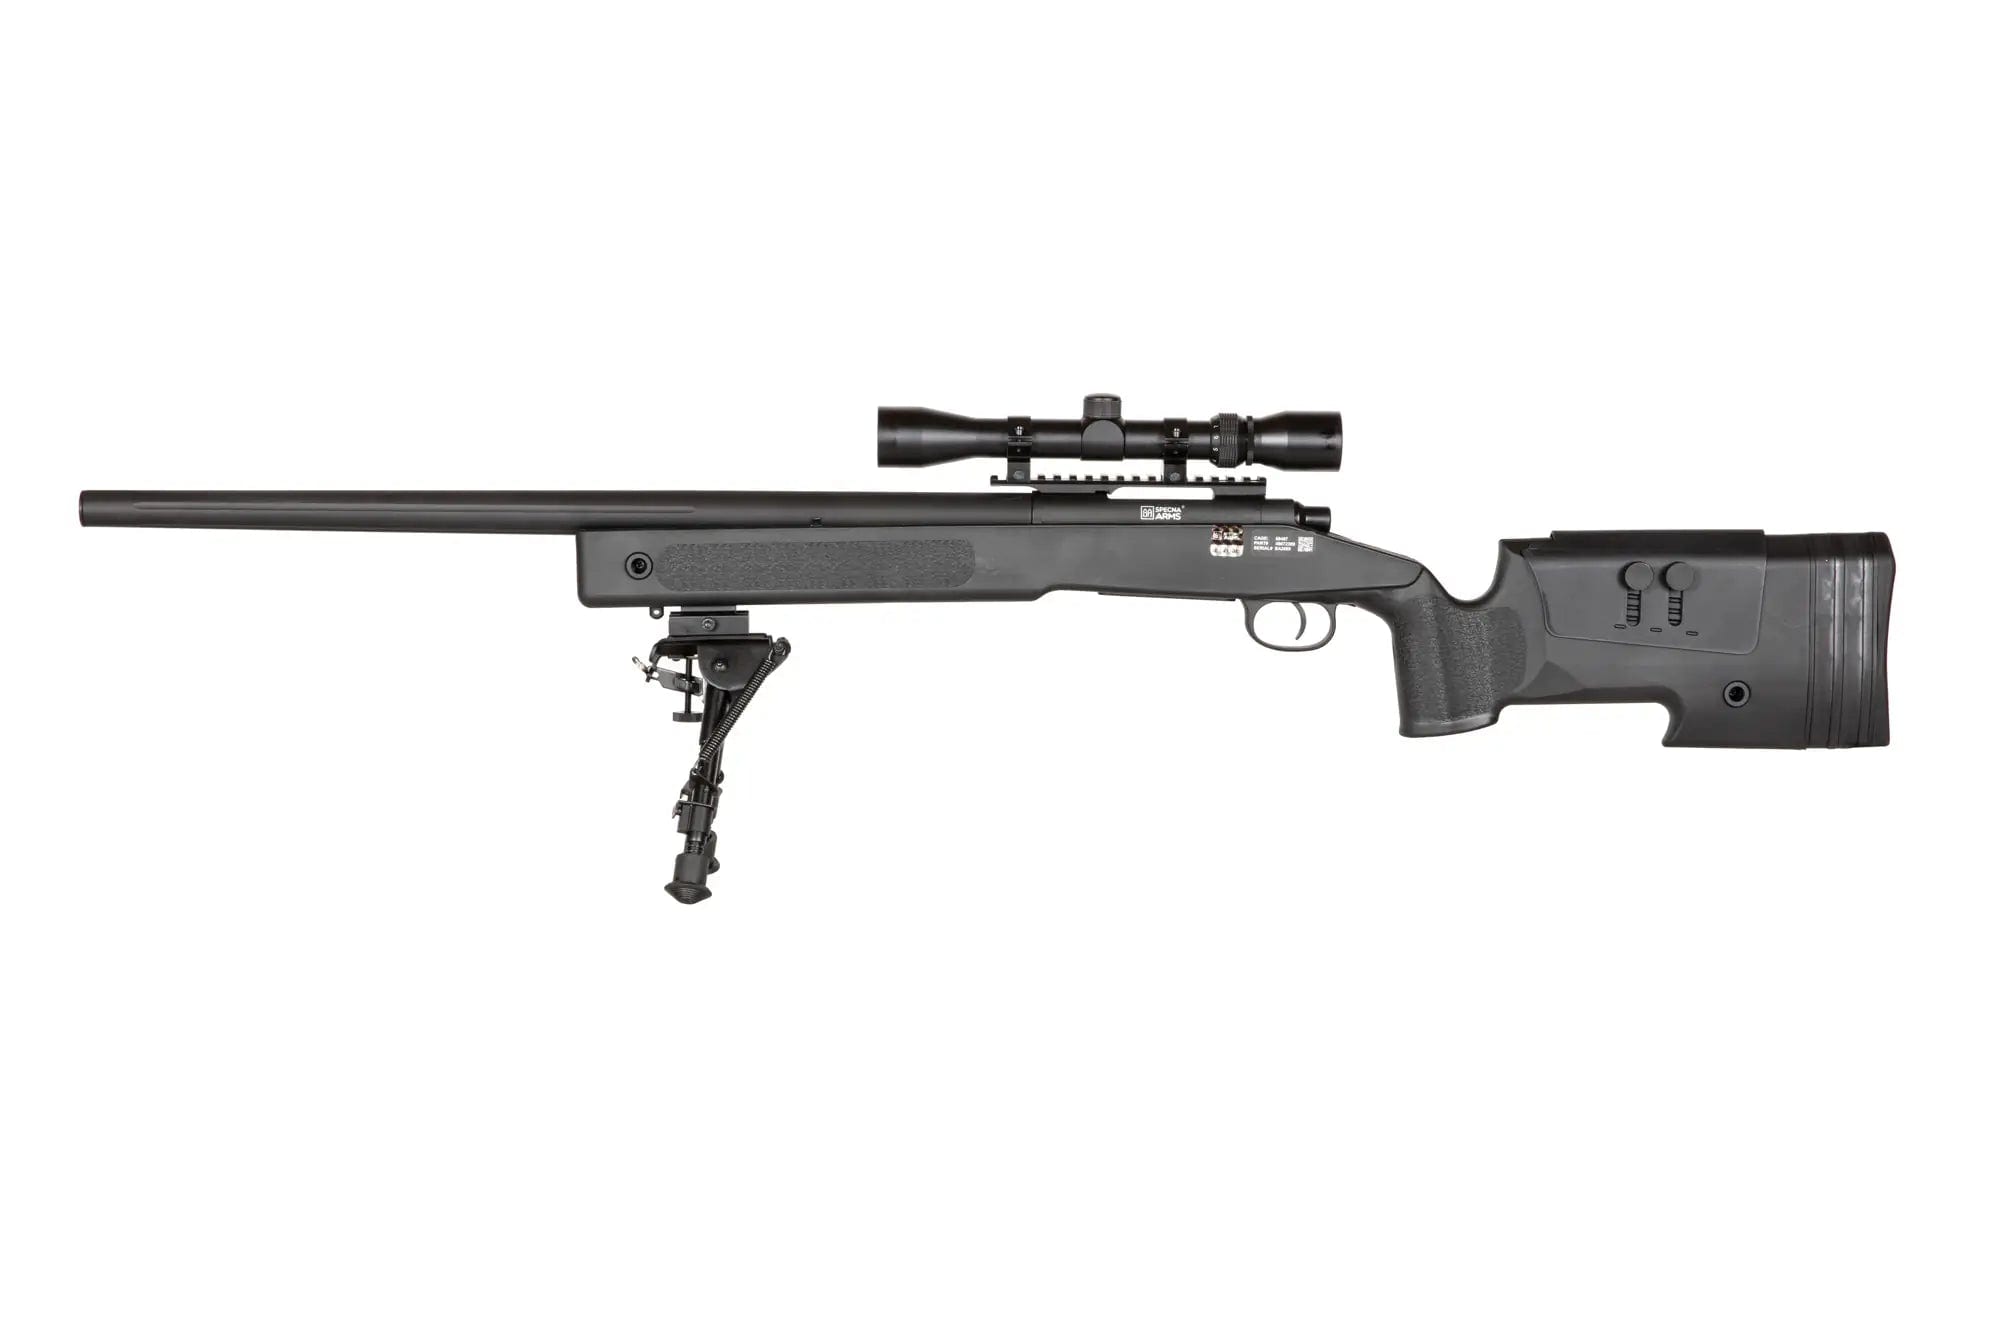 SA-S02 CORE™ High Velocity Sniper Rifle Replica with Scope and Bipod - Black